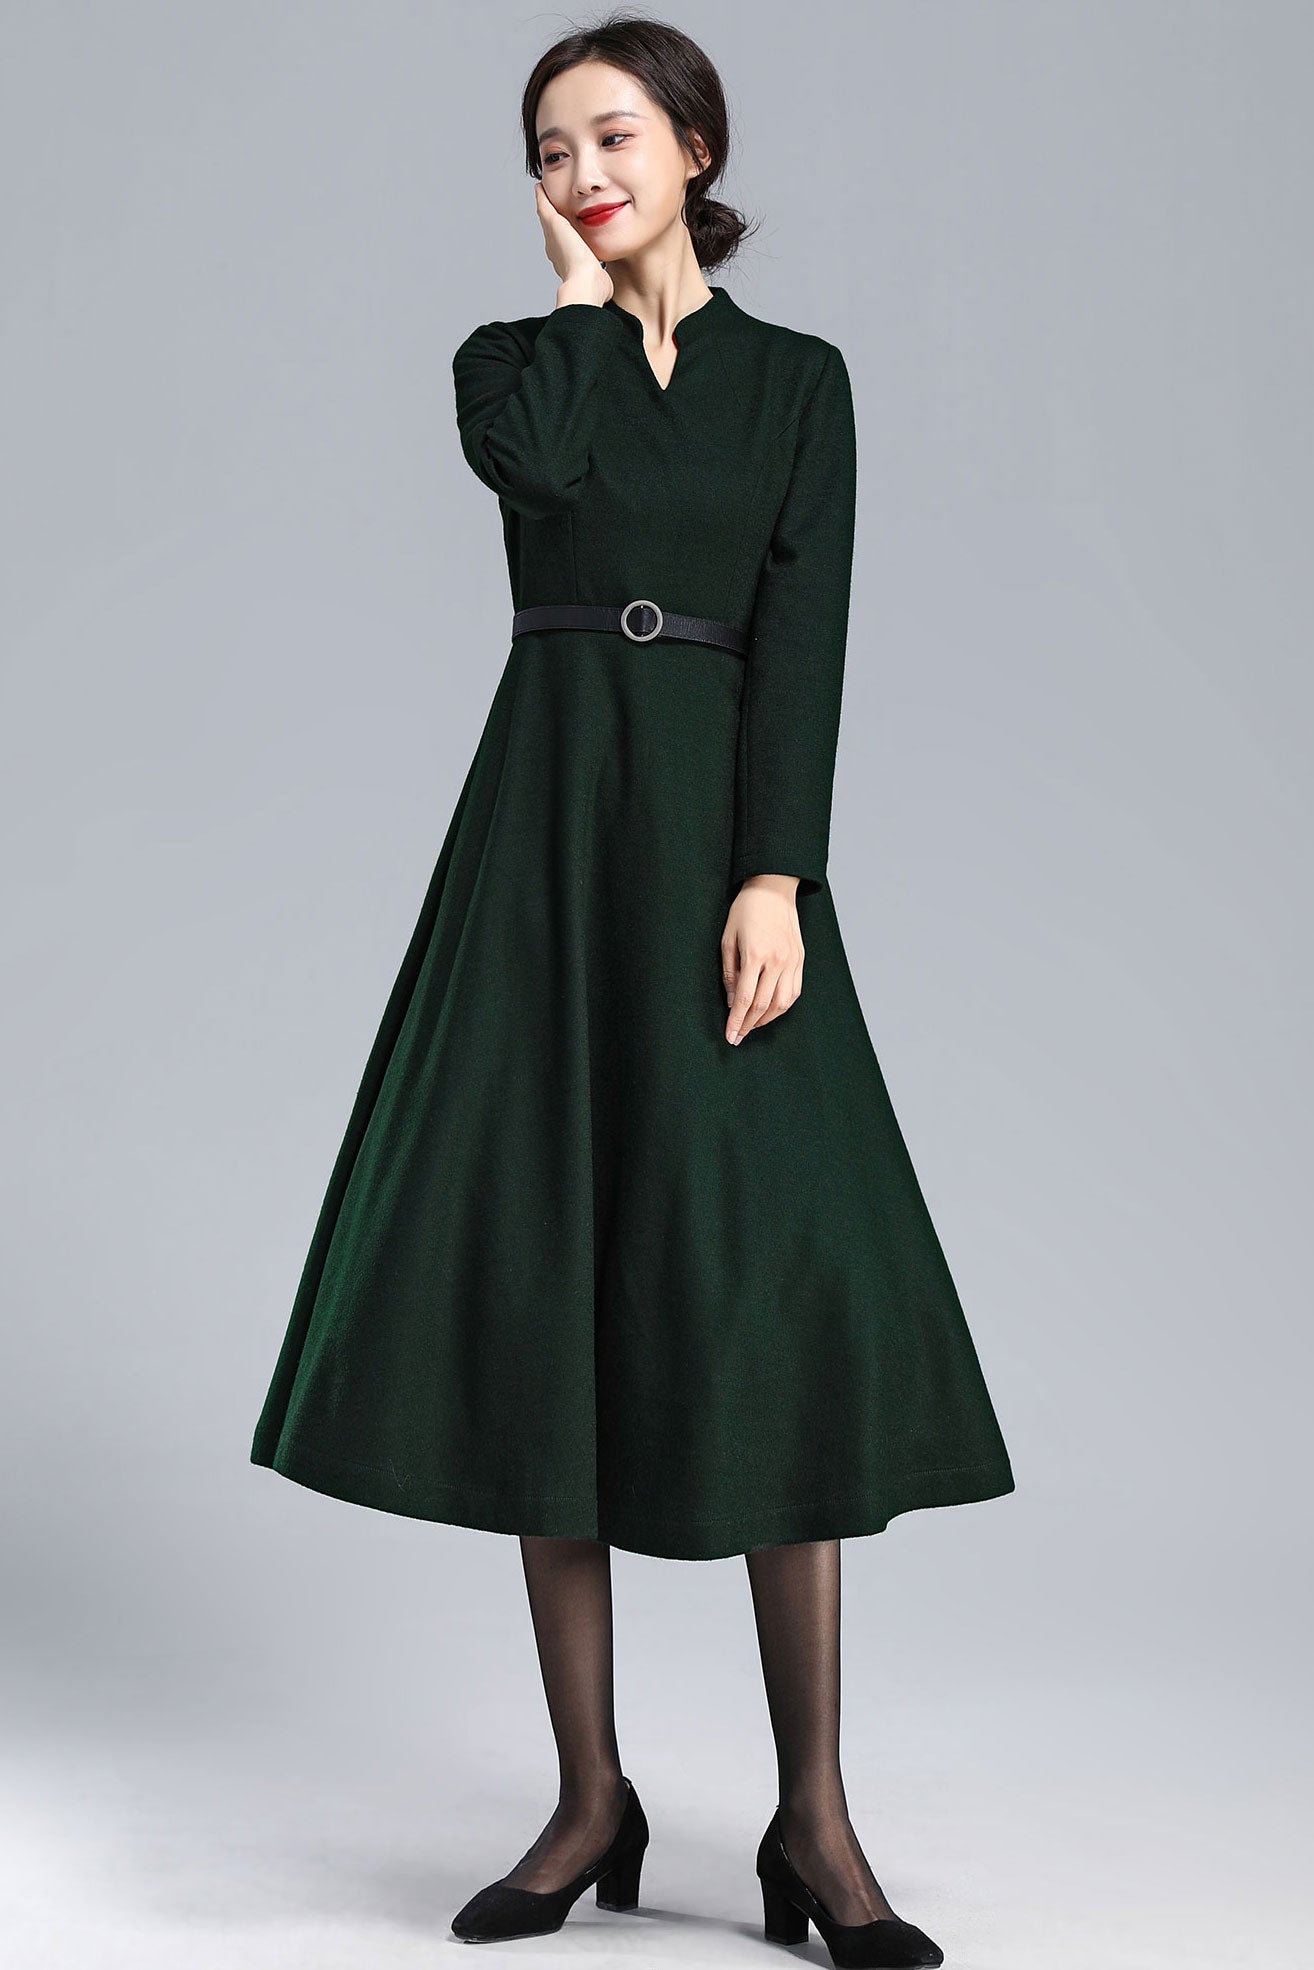 Emerald Green Winter Long Wool Dress 3175